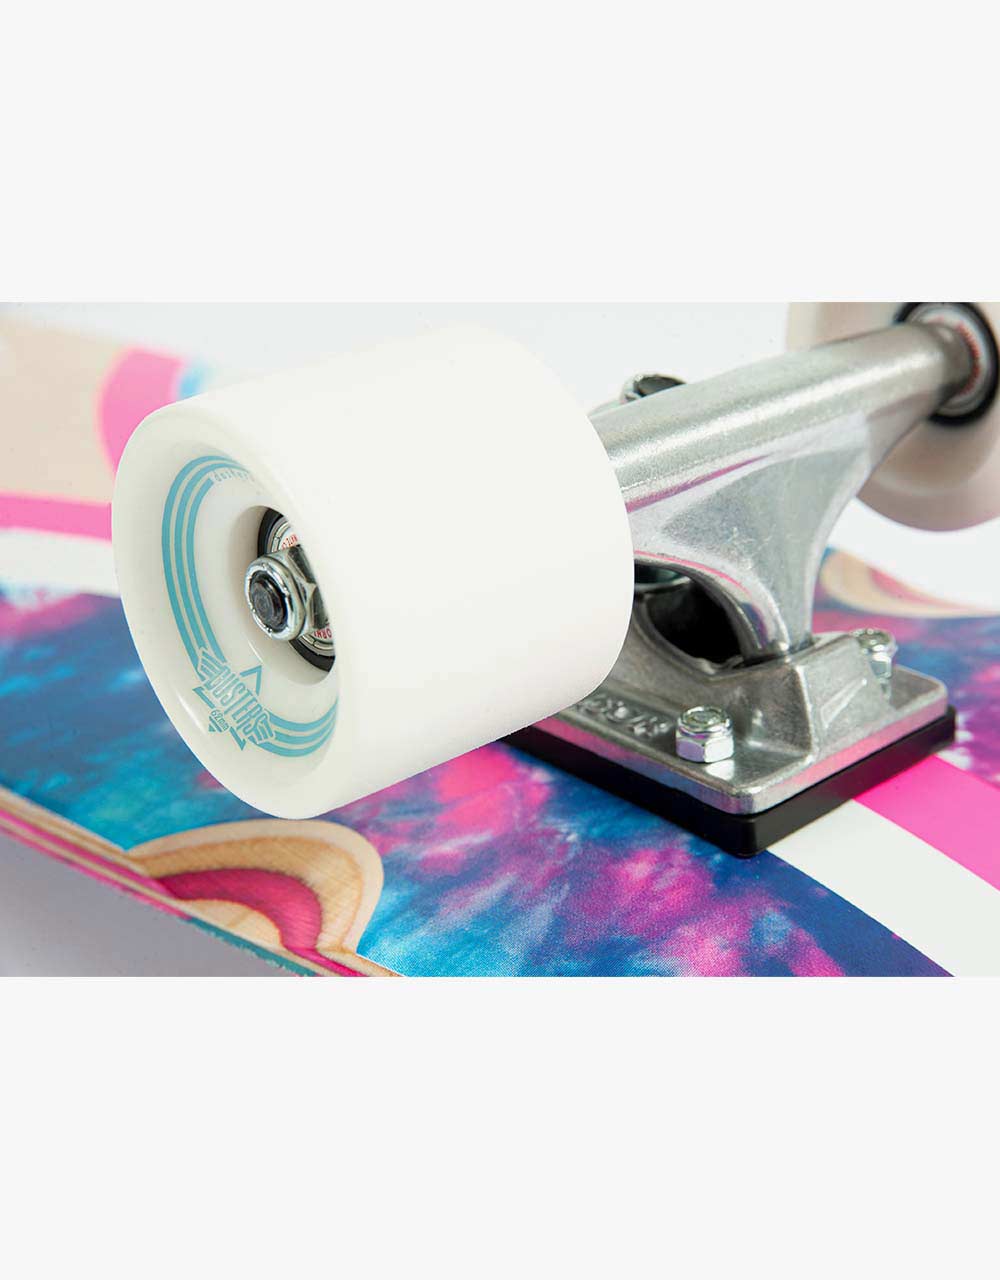 Dusters Flashback Tie Dye Cruiser Skateboard - 8.5" x 31.125"